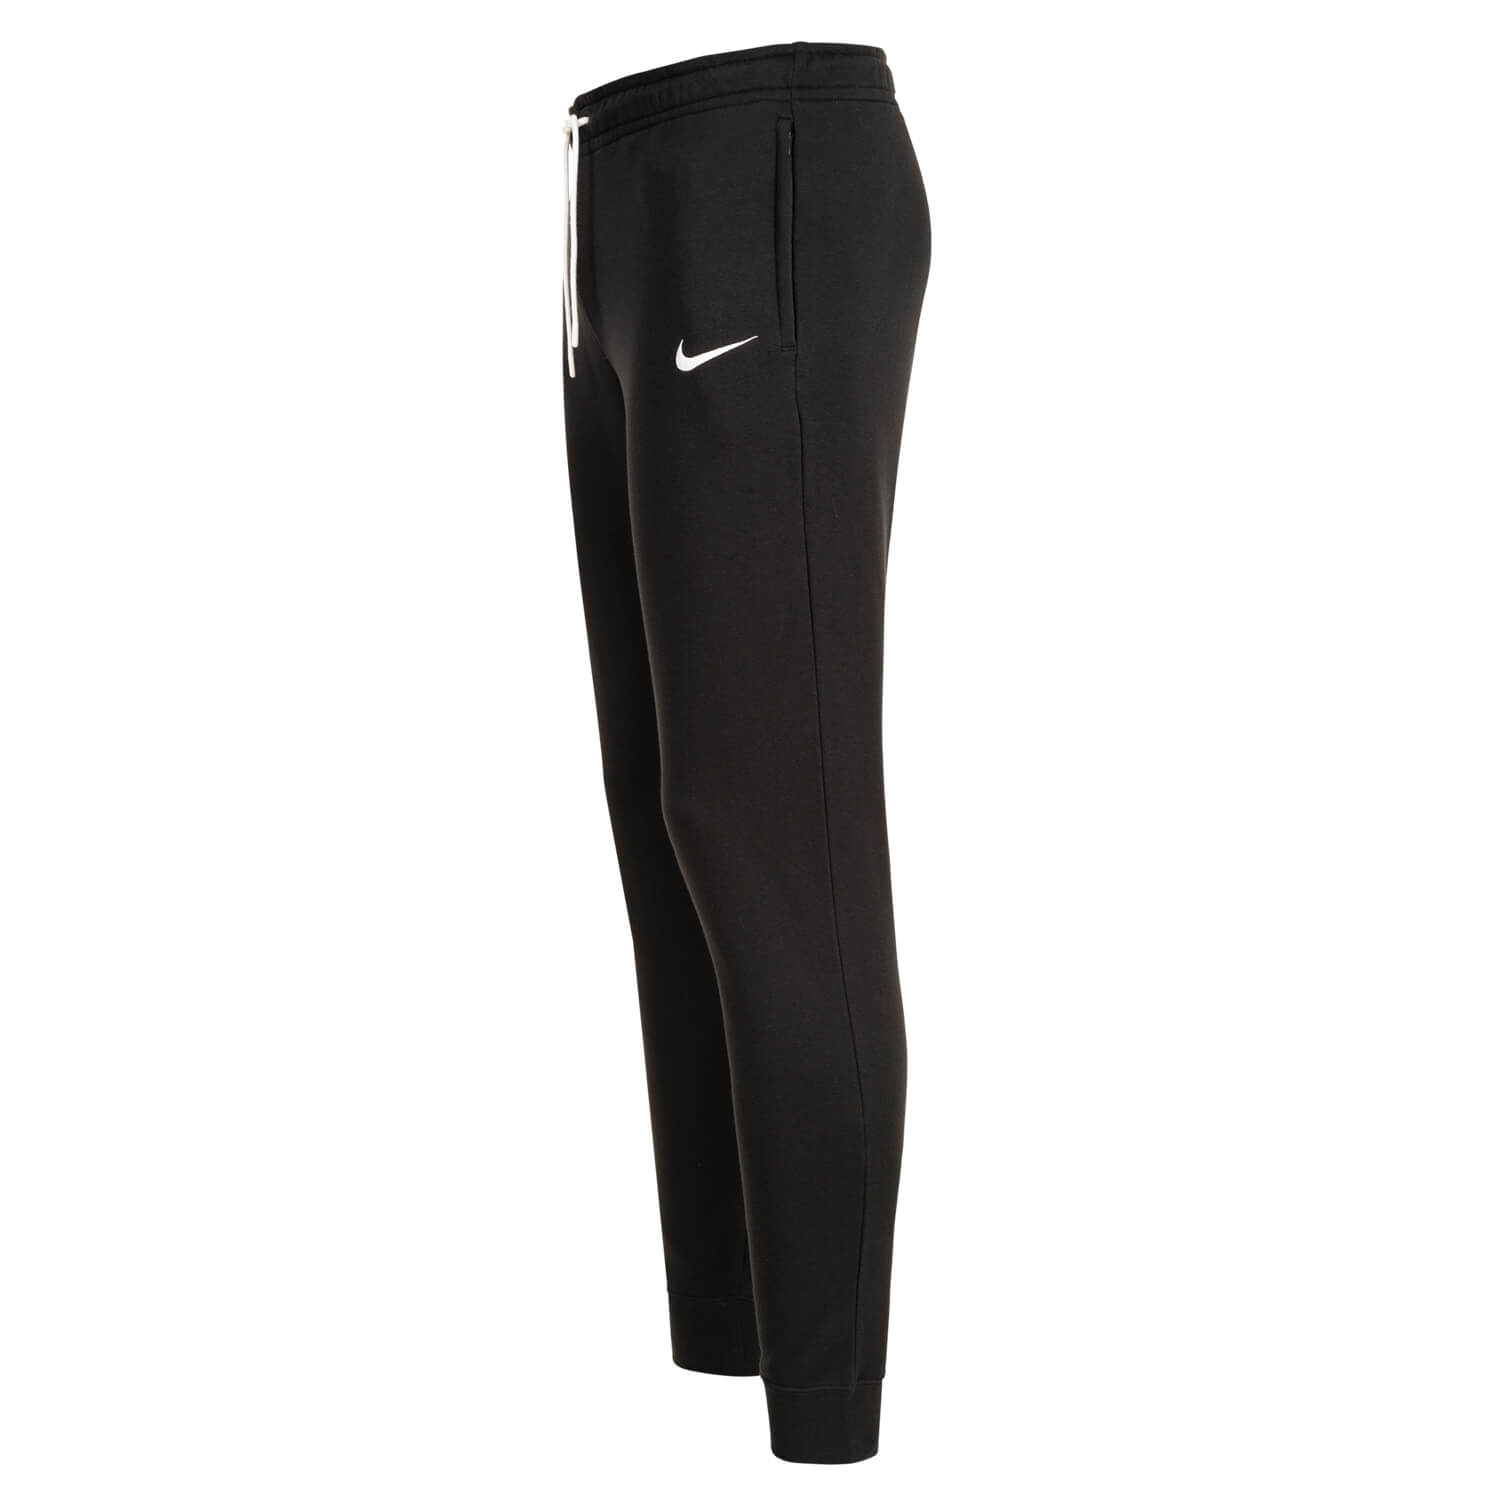 Bild 3: Nike Damen Hose lang Basic schwarz